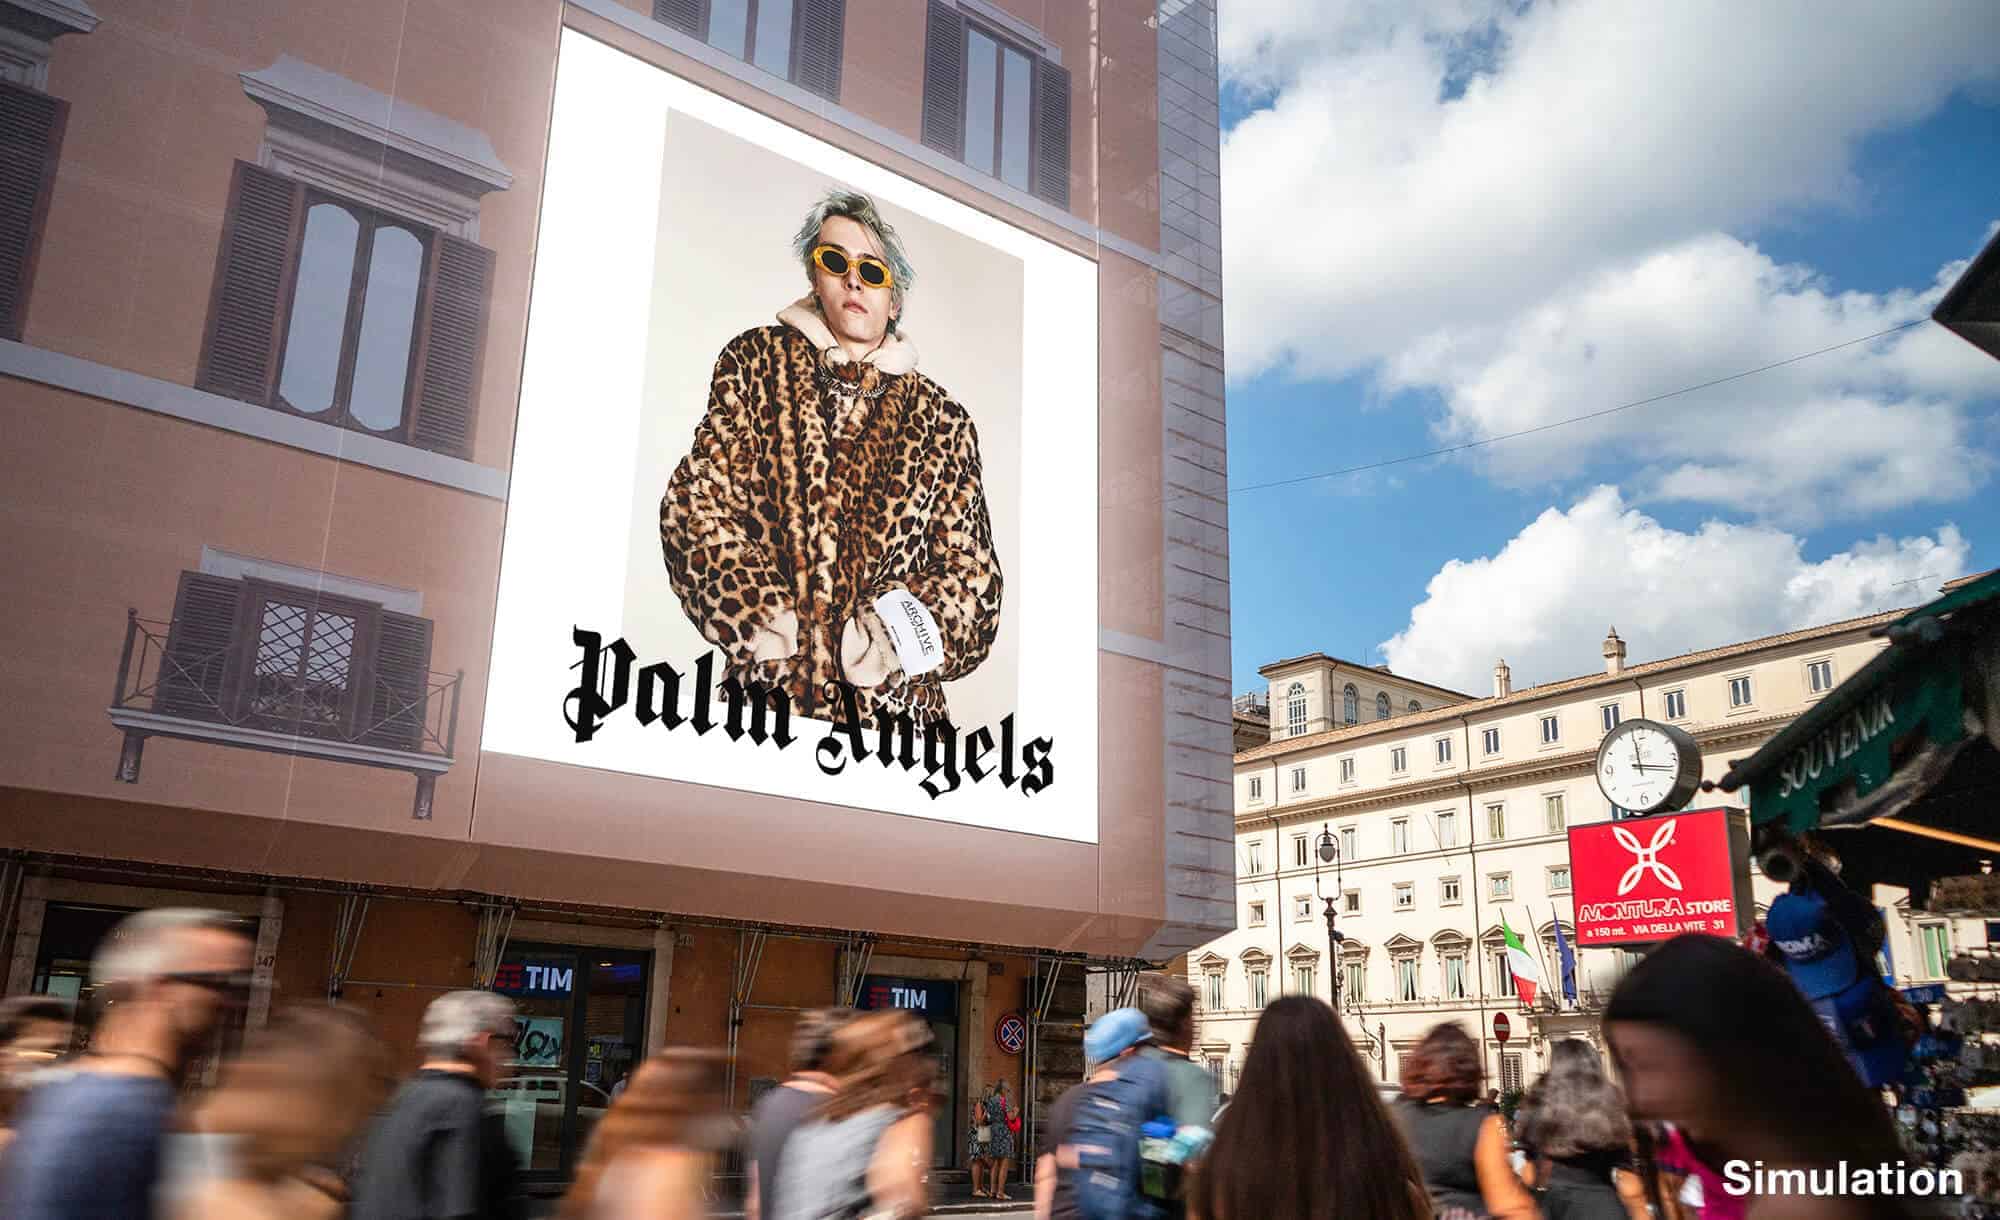 Maxi Affissione a Roma in Piazza Colonna con Palm Angels (Fashion)